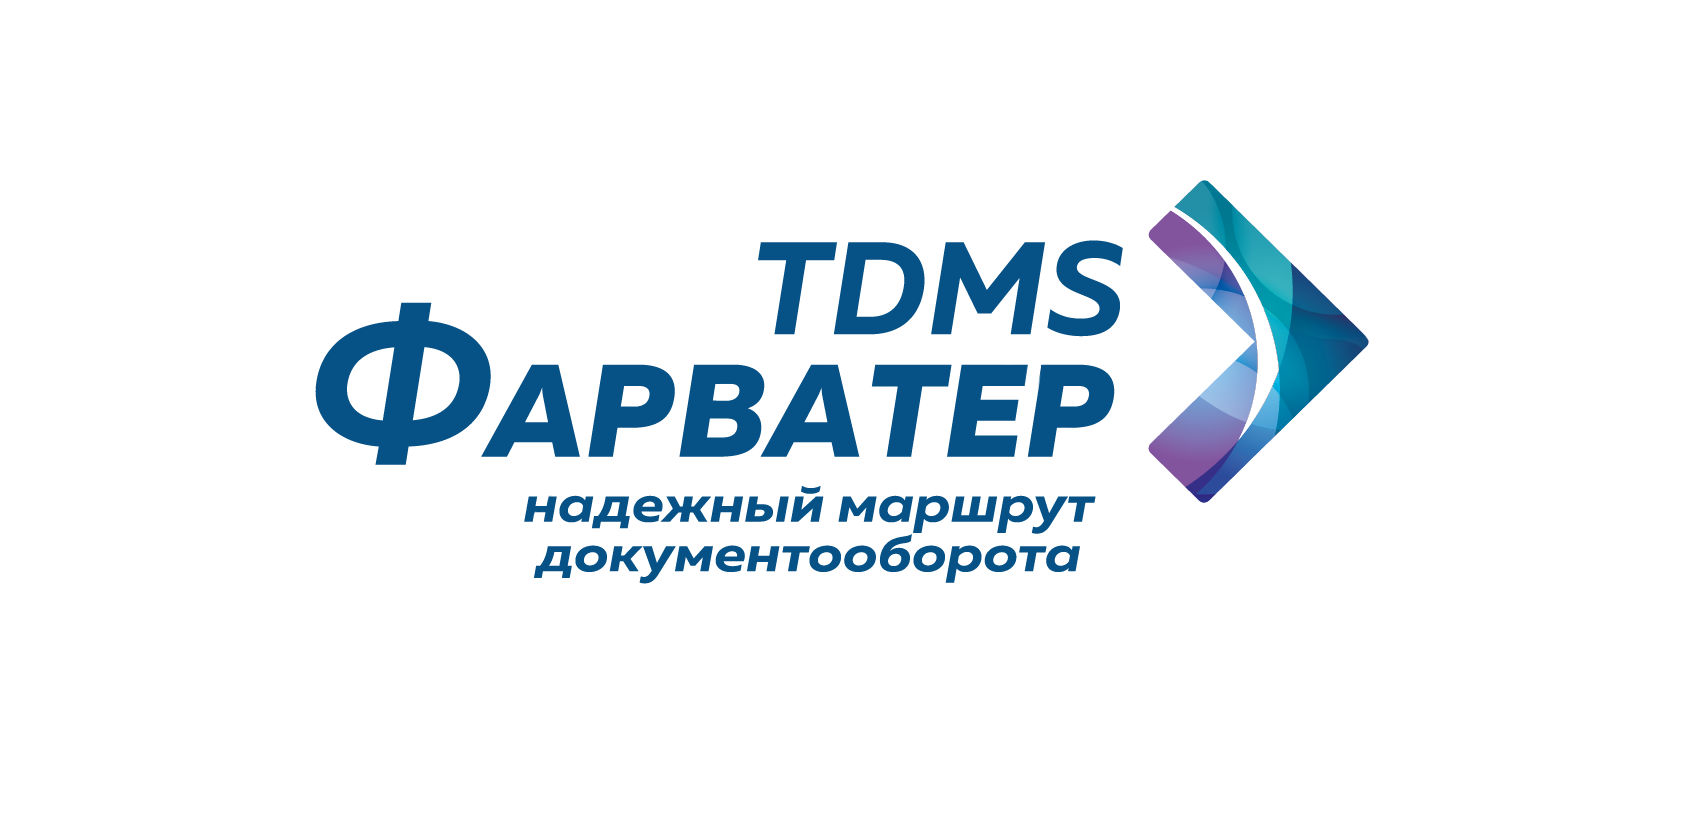 TDMS Фарватер. Методики PMBOK и российские проектные организации - 4